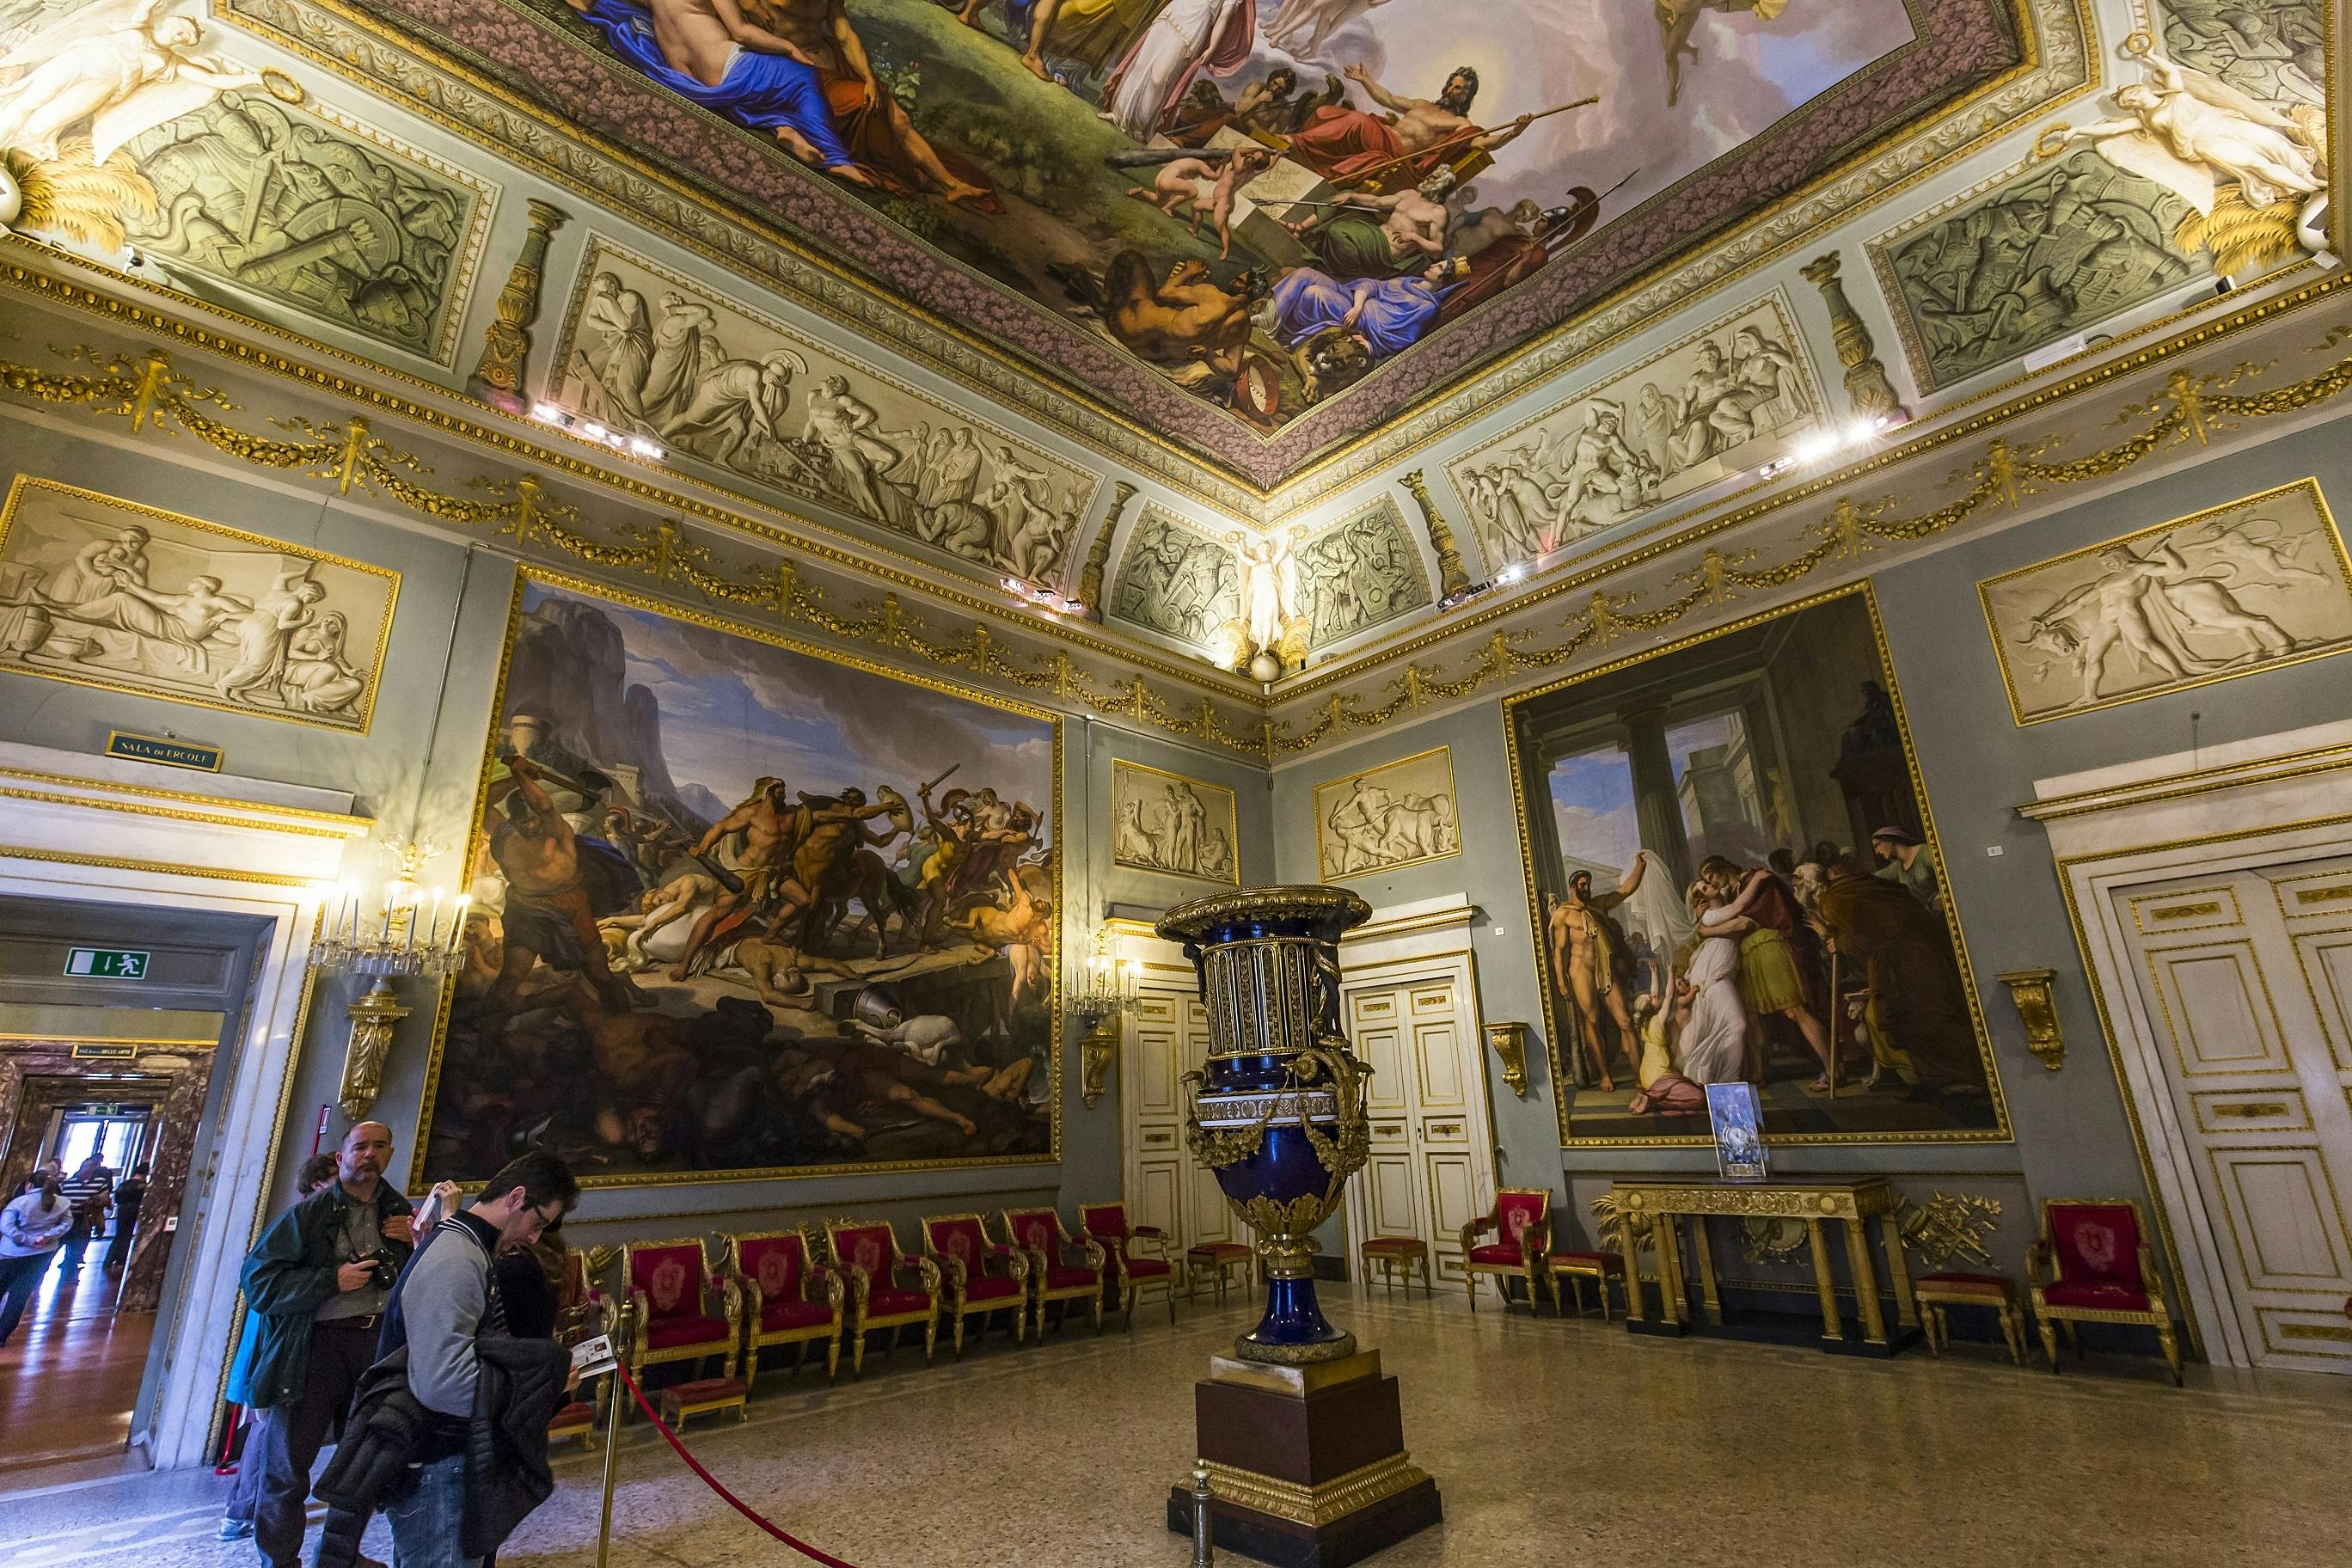 Recorrido por la Florencia de los Médici con entradas al palacio Pitti y sus museos